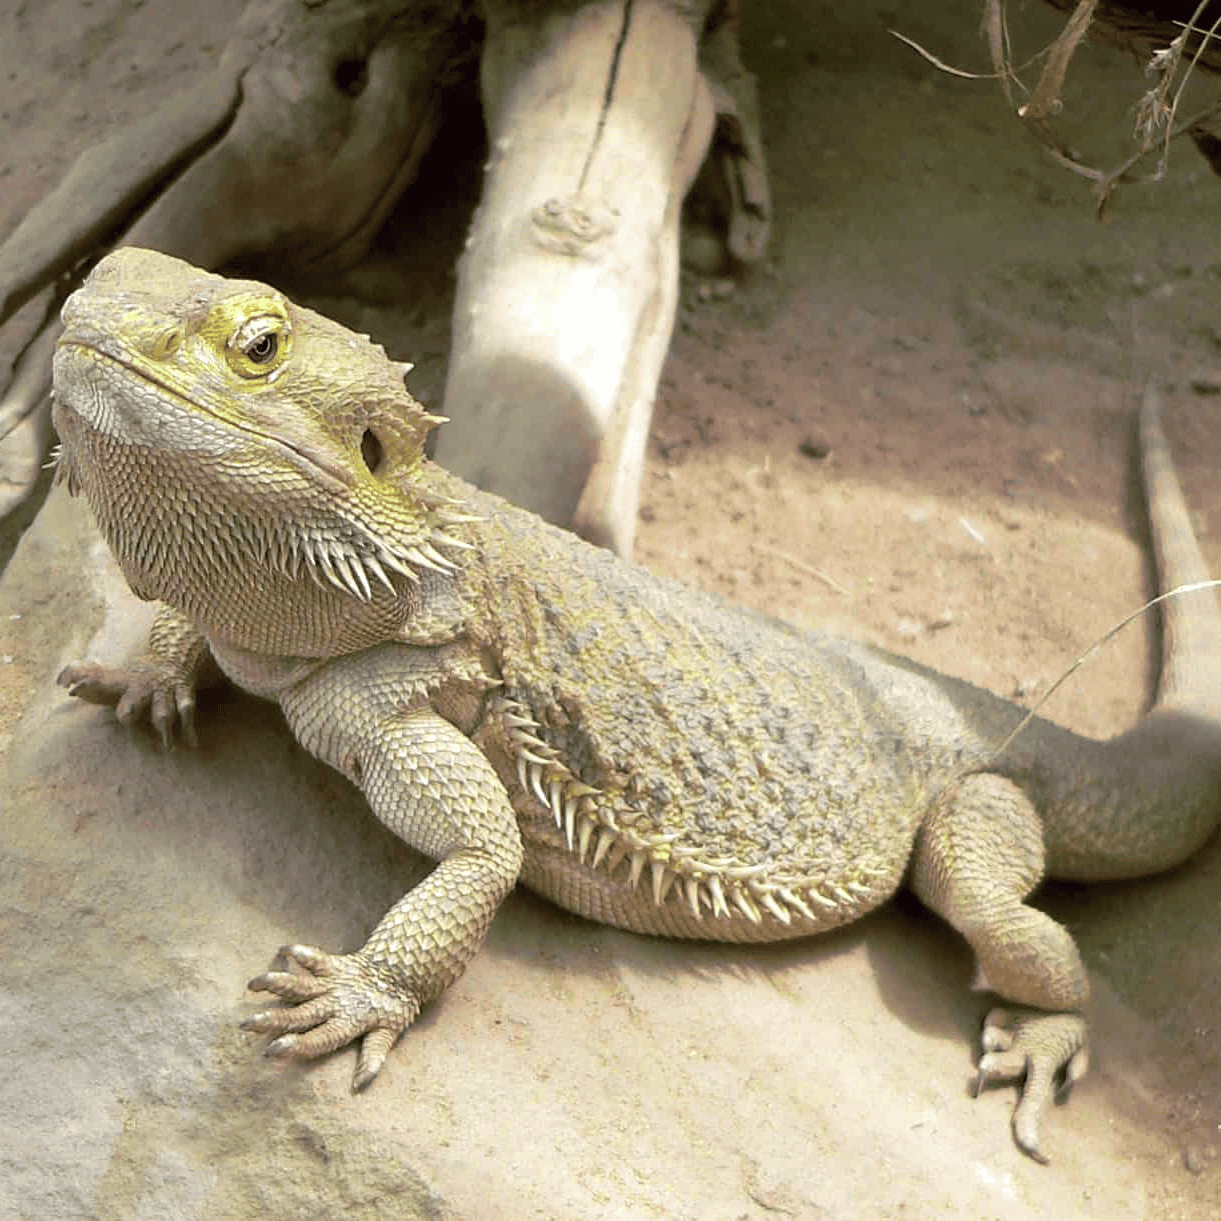 Bearded Dragon reptile